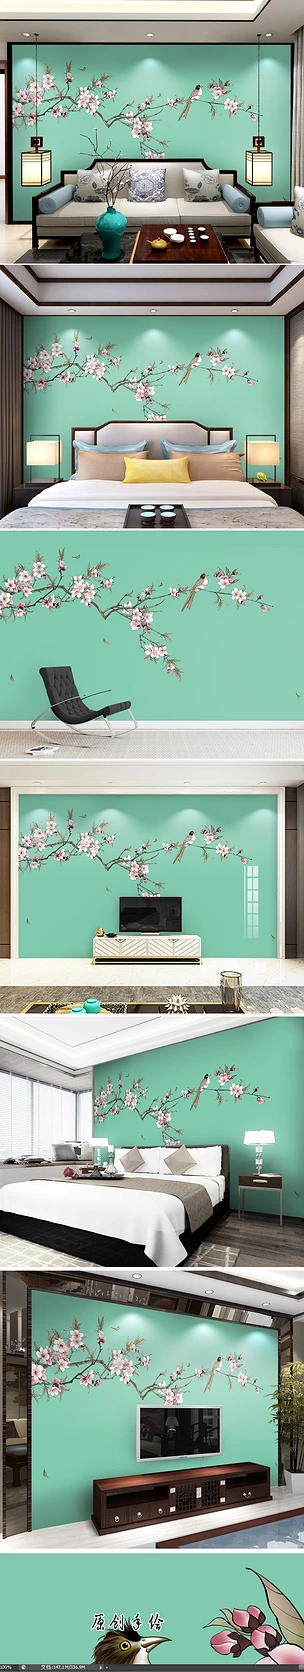 新中式手绘海棠花工笔花鸟电视背景墙装饰画